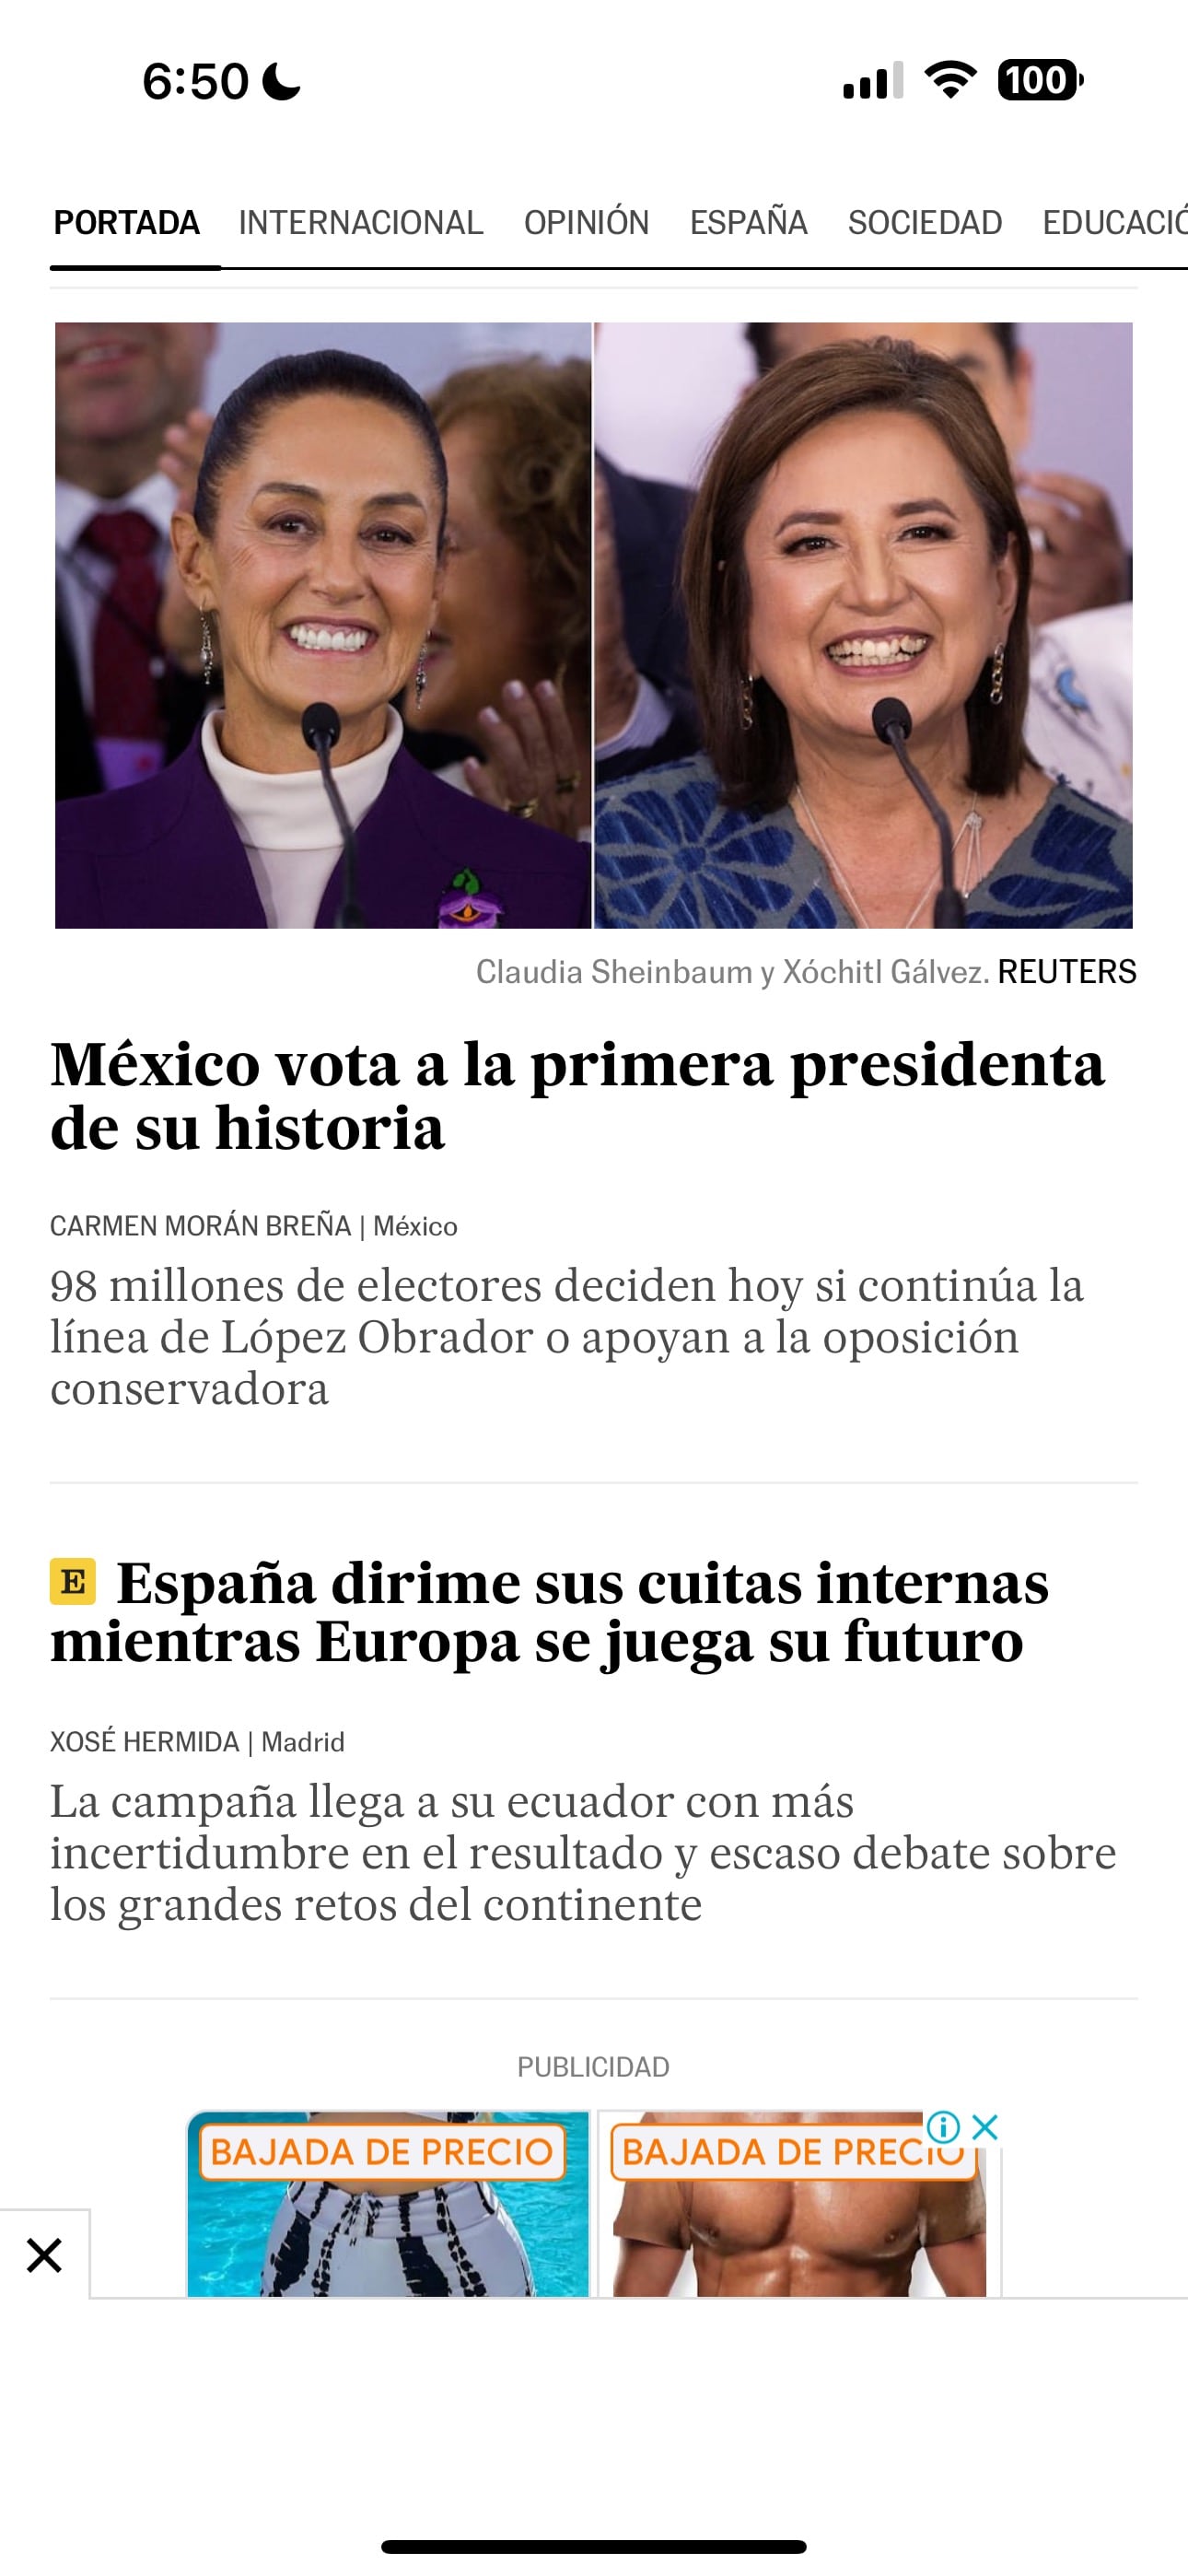 Más de 100 medios internacionales están acreditados para seguir la elección este domingo en México